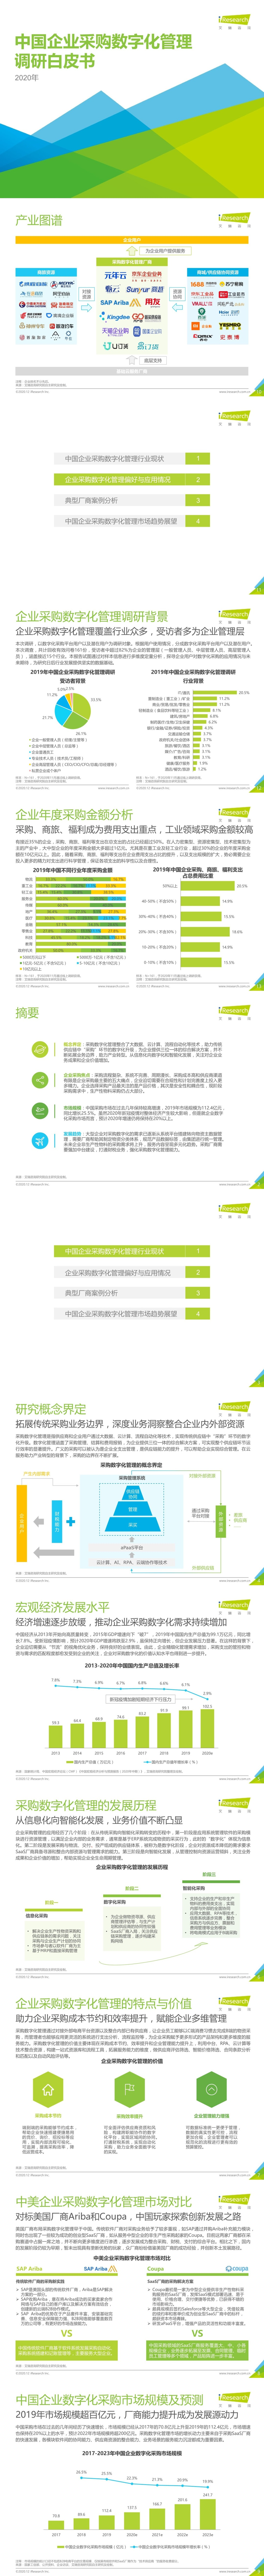 「行业报告」艾瑞咨询：2020年中国企业采购数字化管理调研白皮书